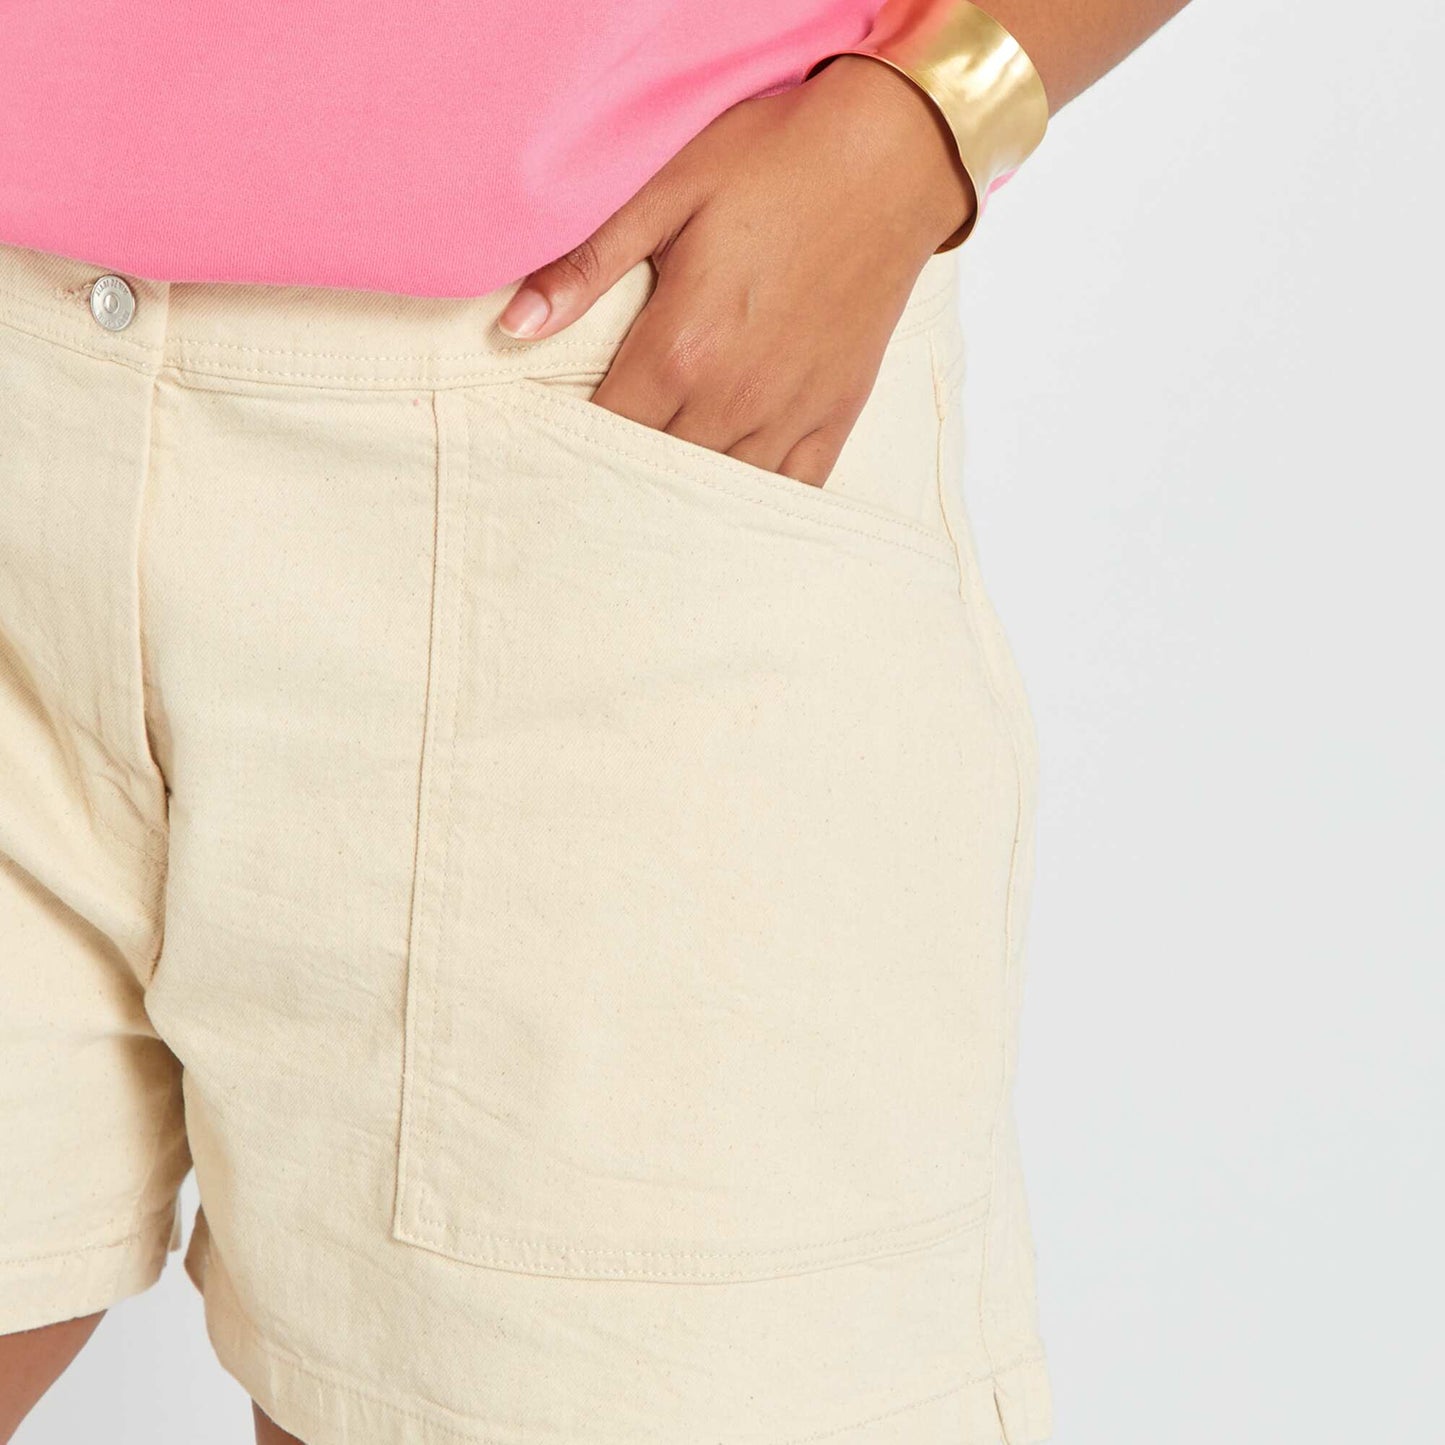 Denim shorts - 2 pockets BEIGE